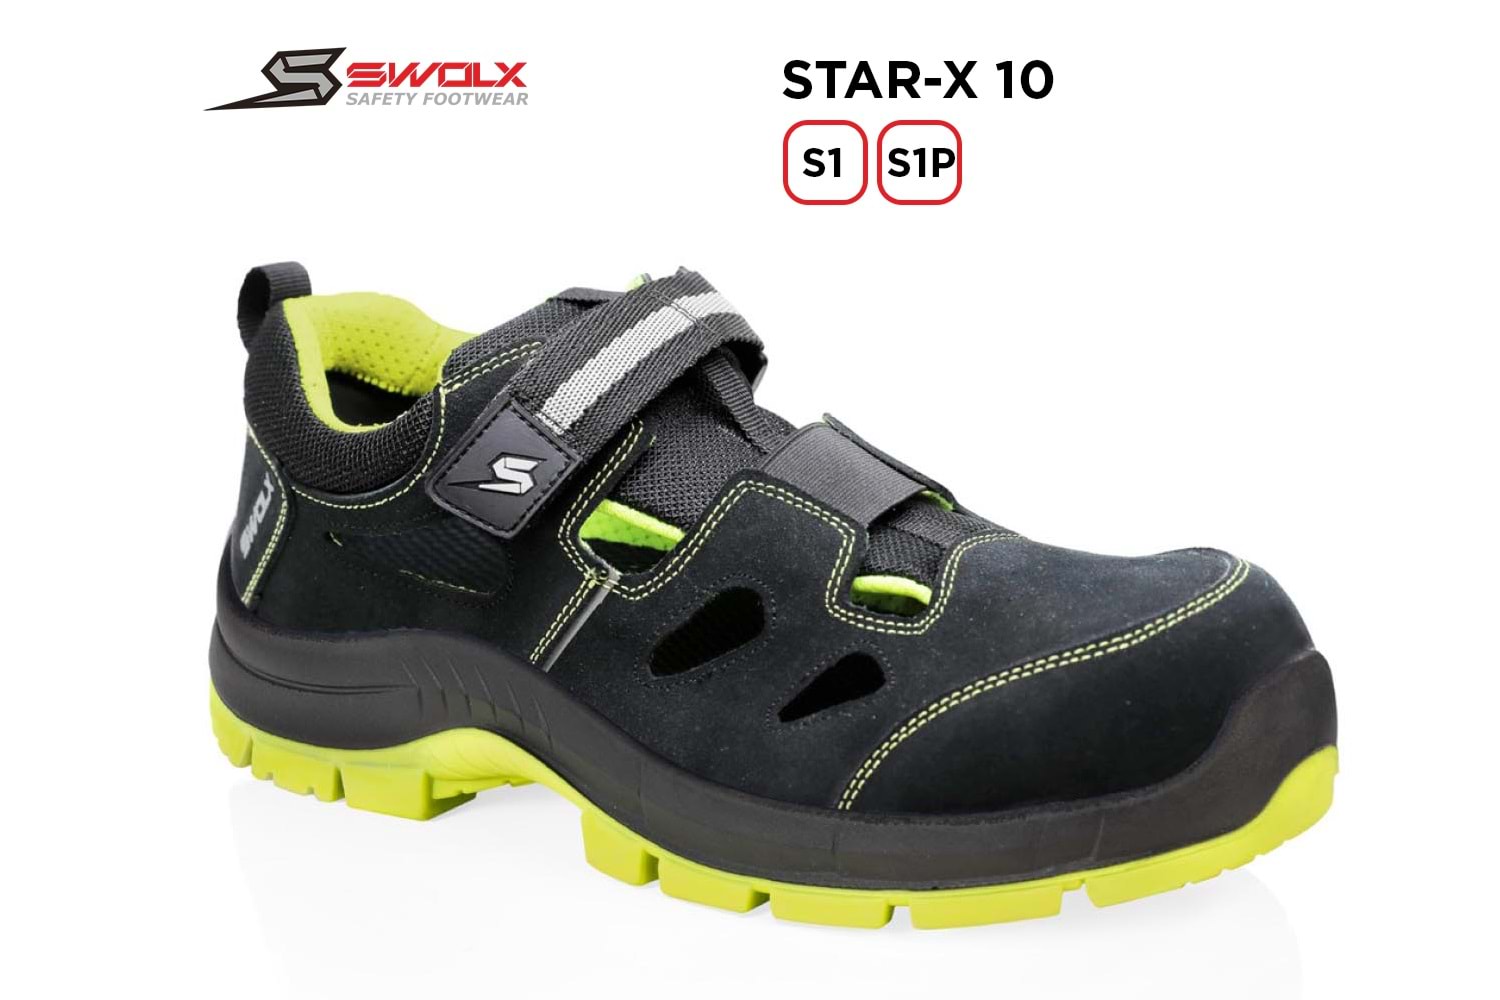 Swolx İş Ayakkabısı - Star-X 10 S1 - 40